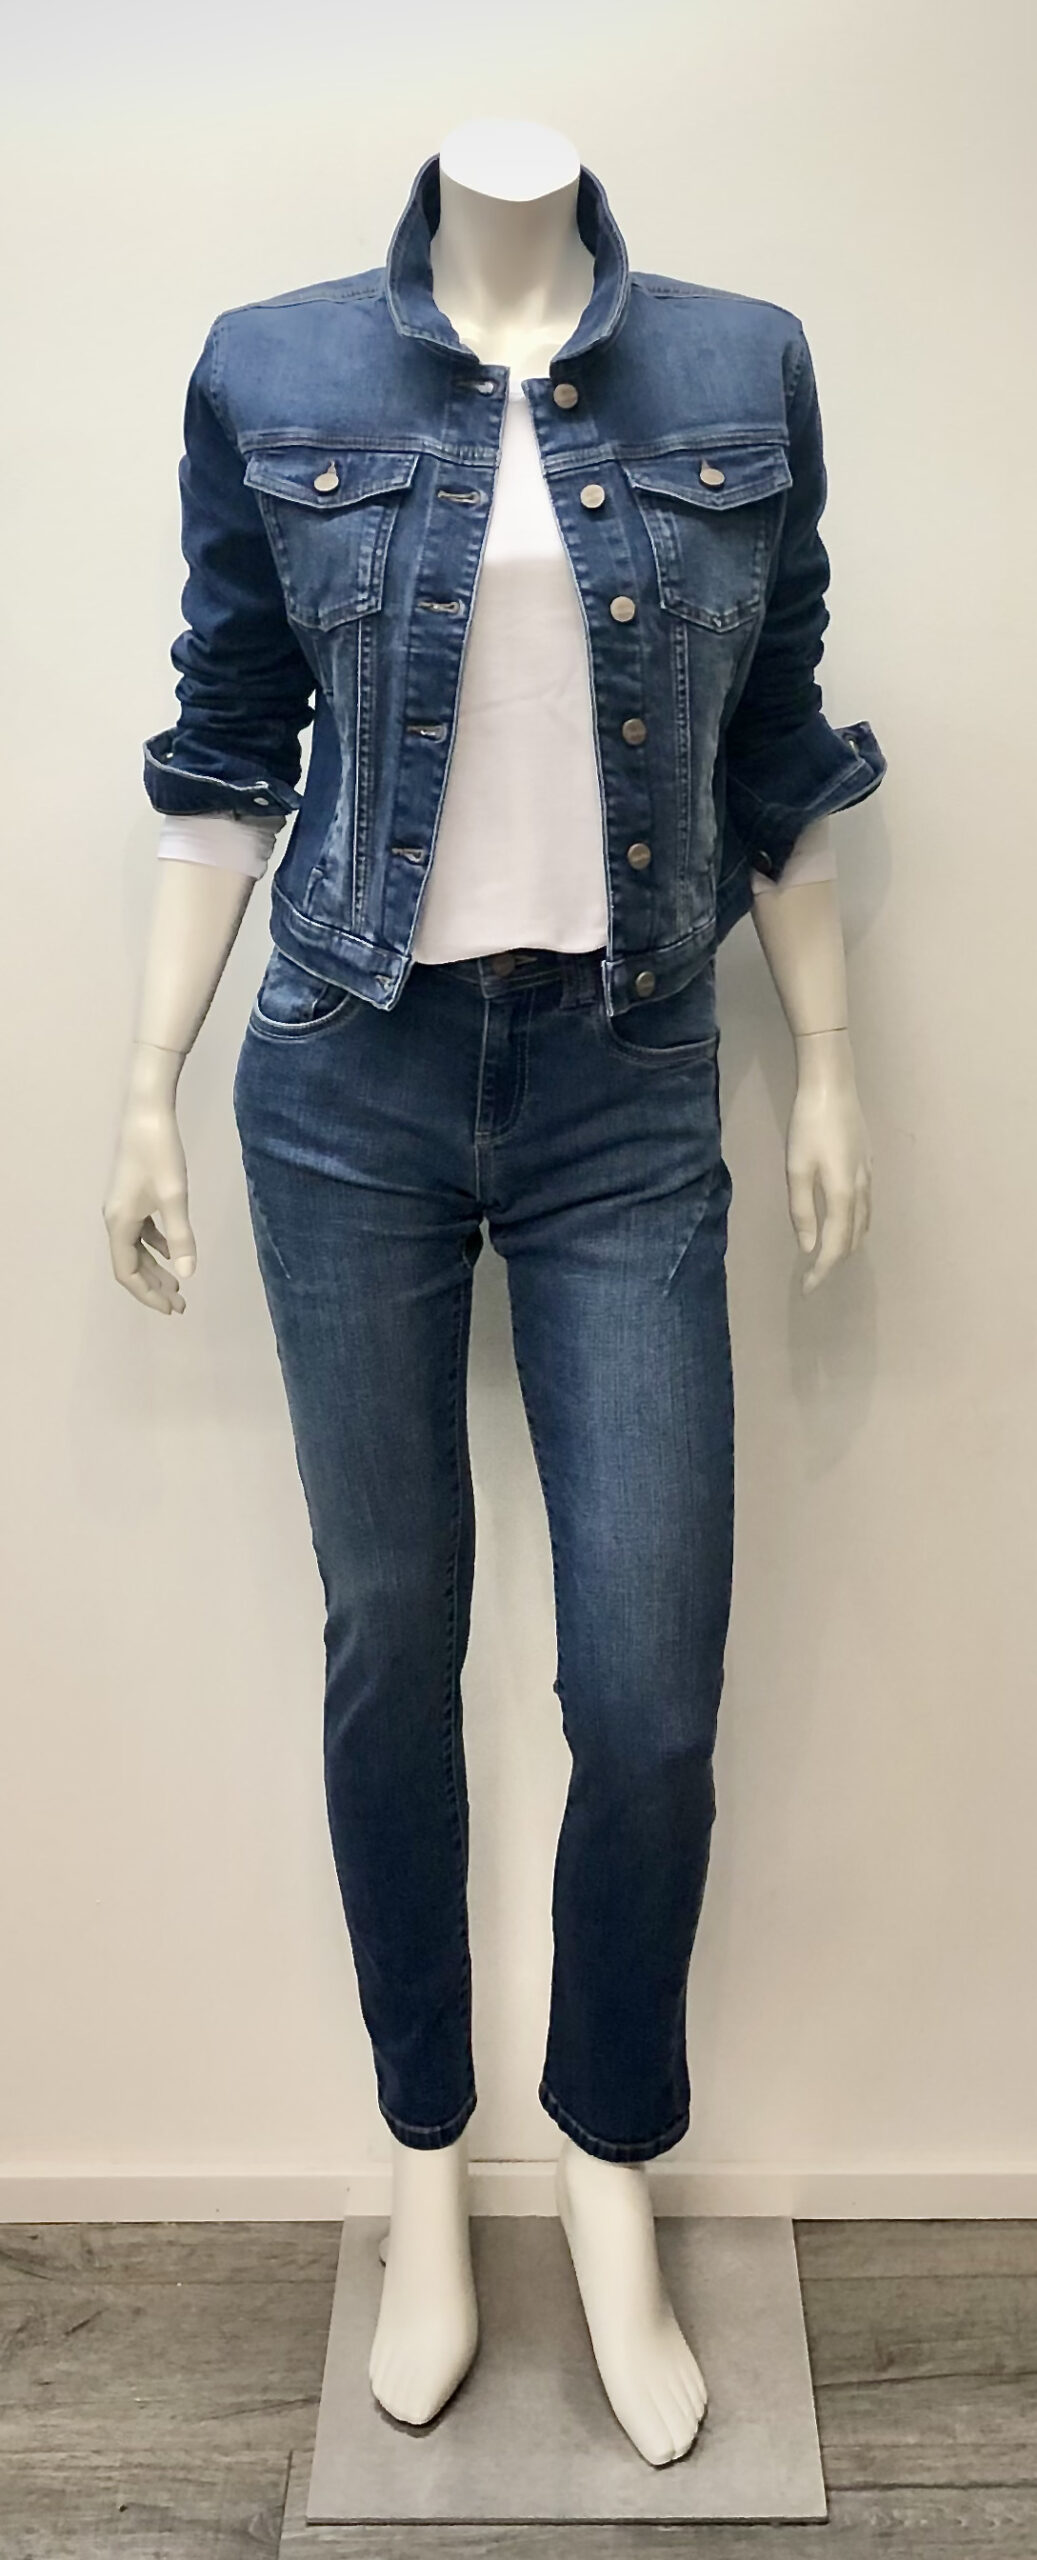 Hanna - Jeans regular fit in mid blue denim von BARTA